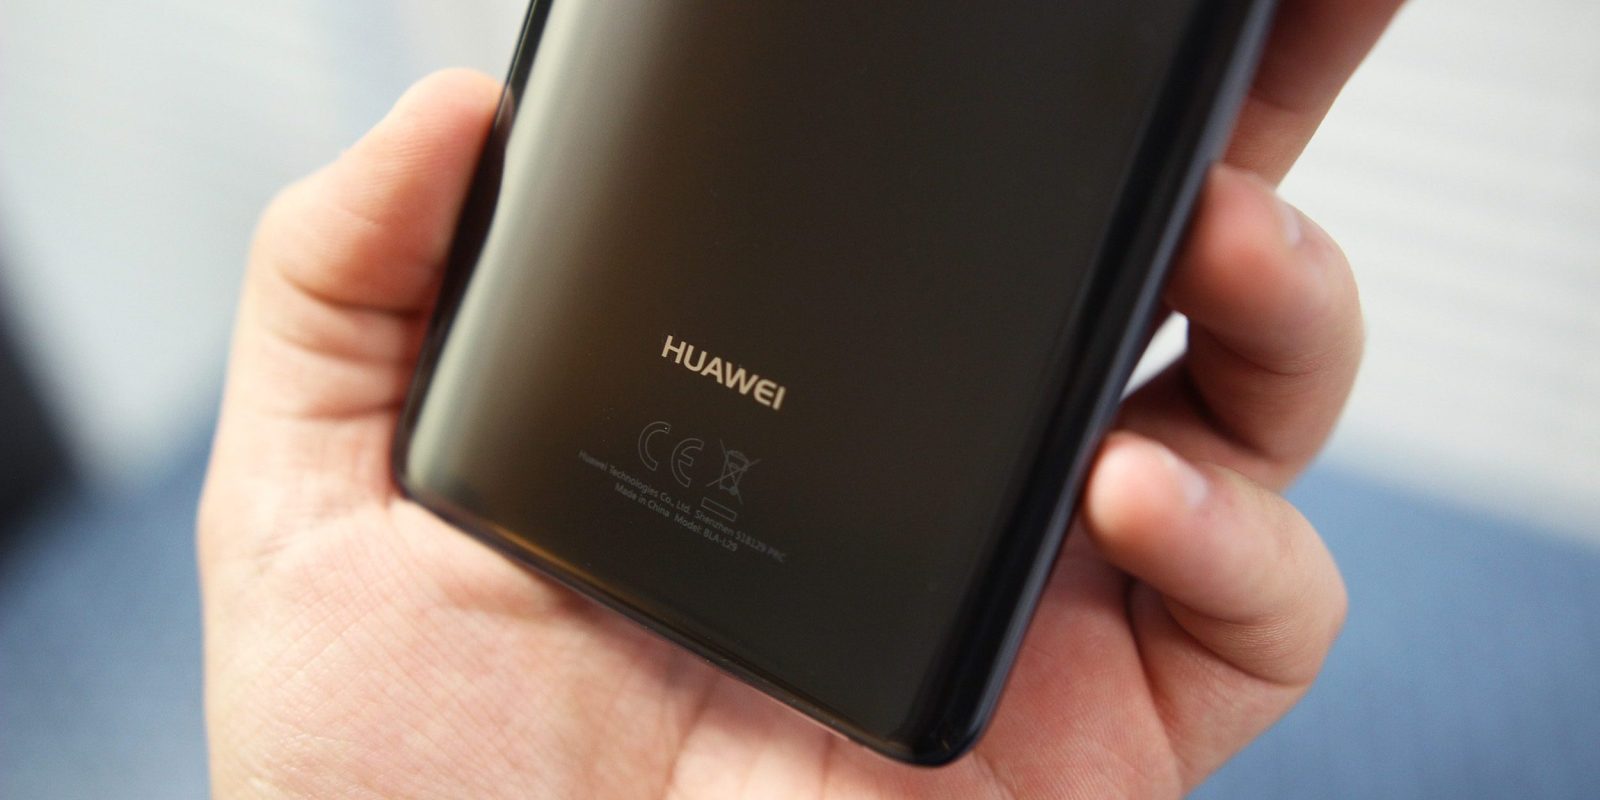 Huawei Mate e Mate 20 Pro: eccoli nelle loro cover ufficiali